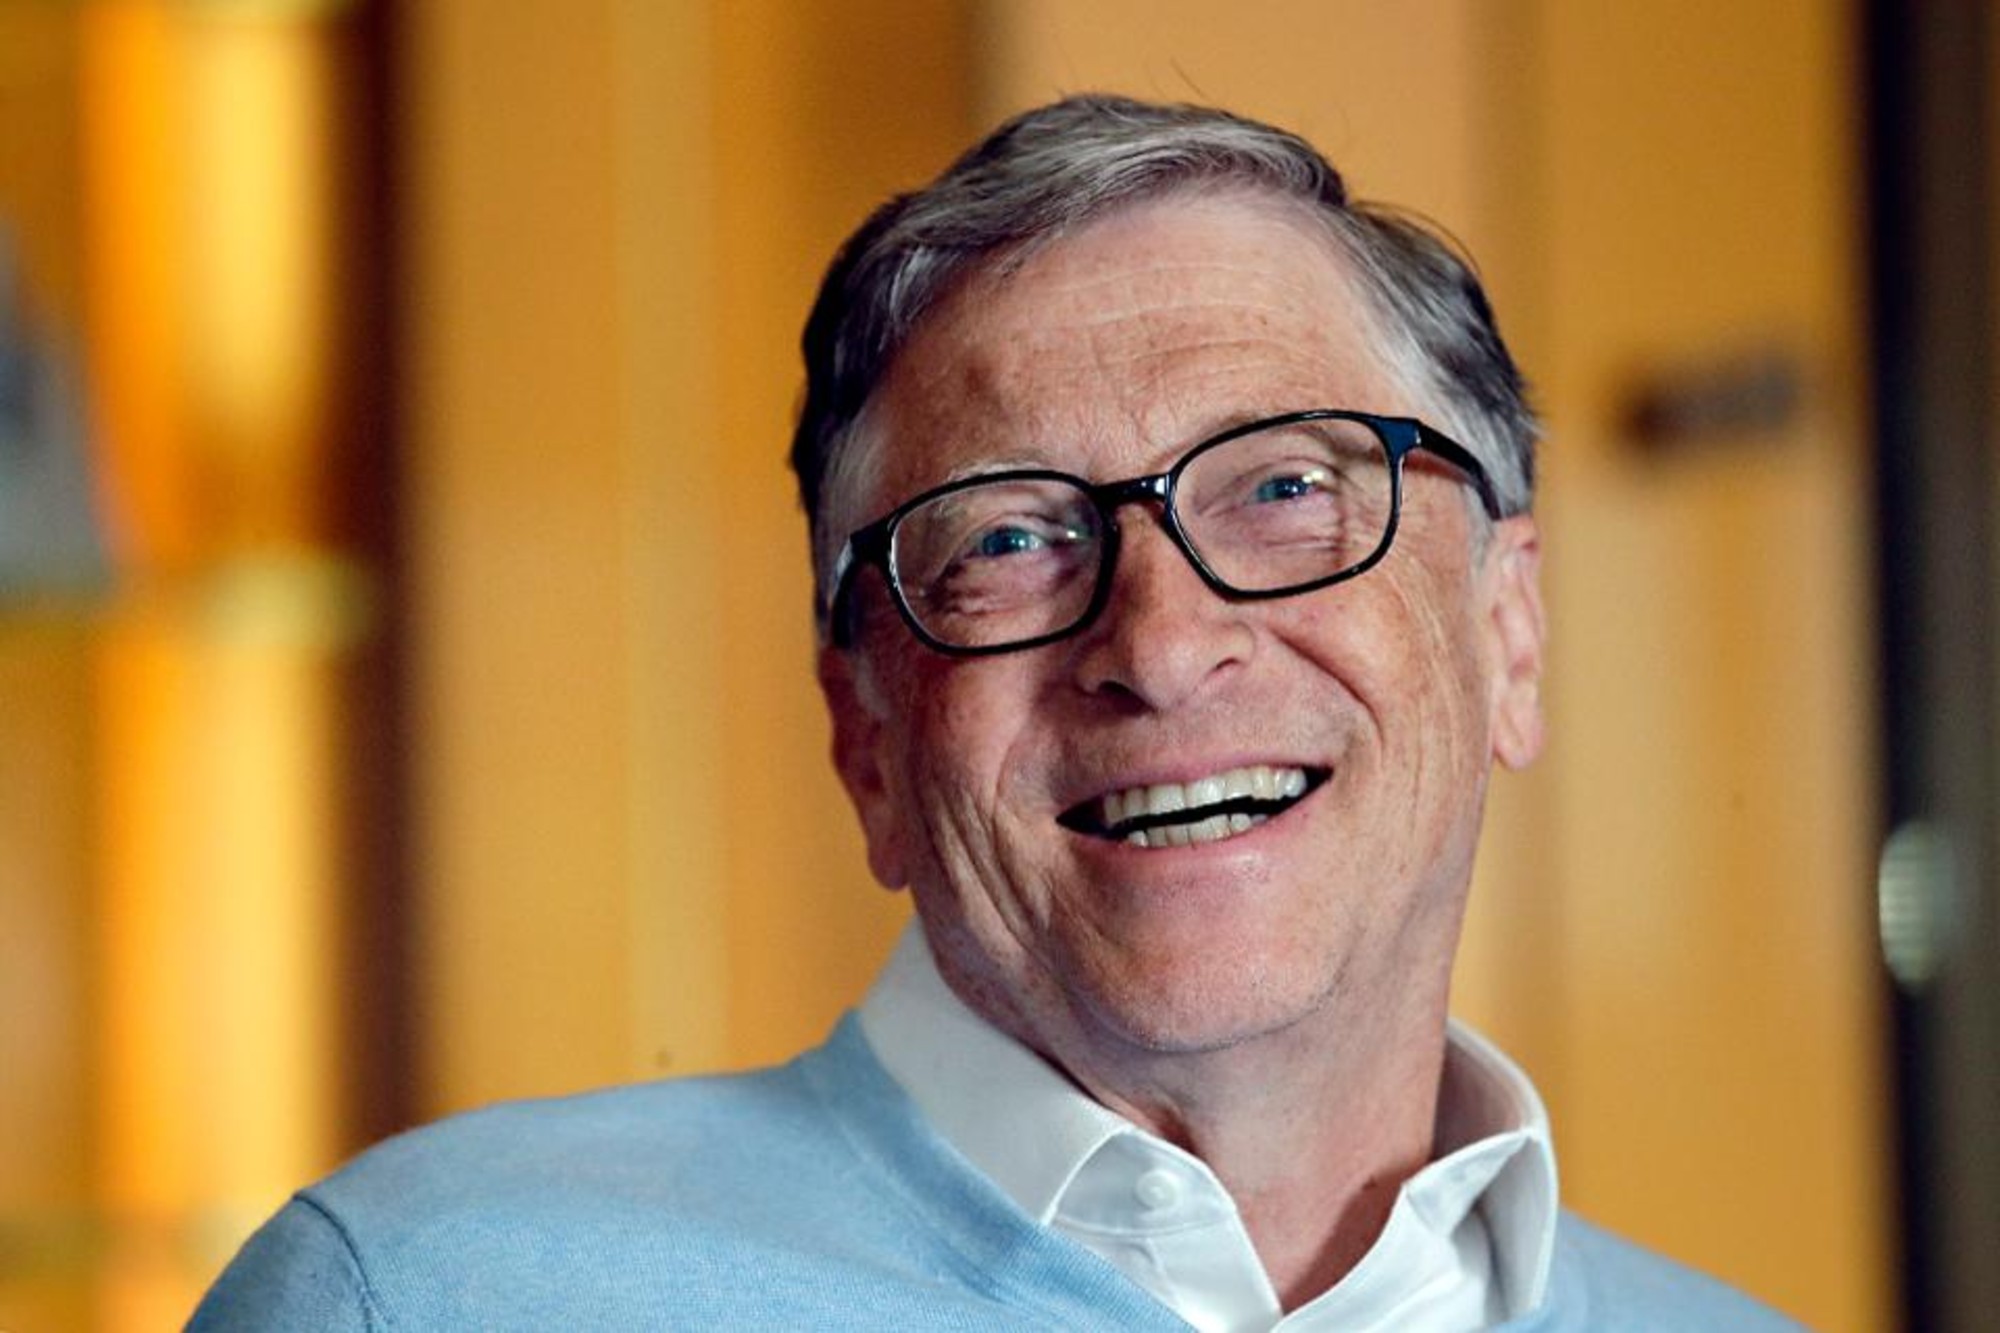 Os 5 segredos da felicidade de Bill Gates